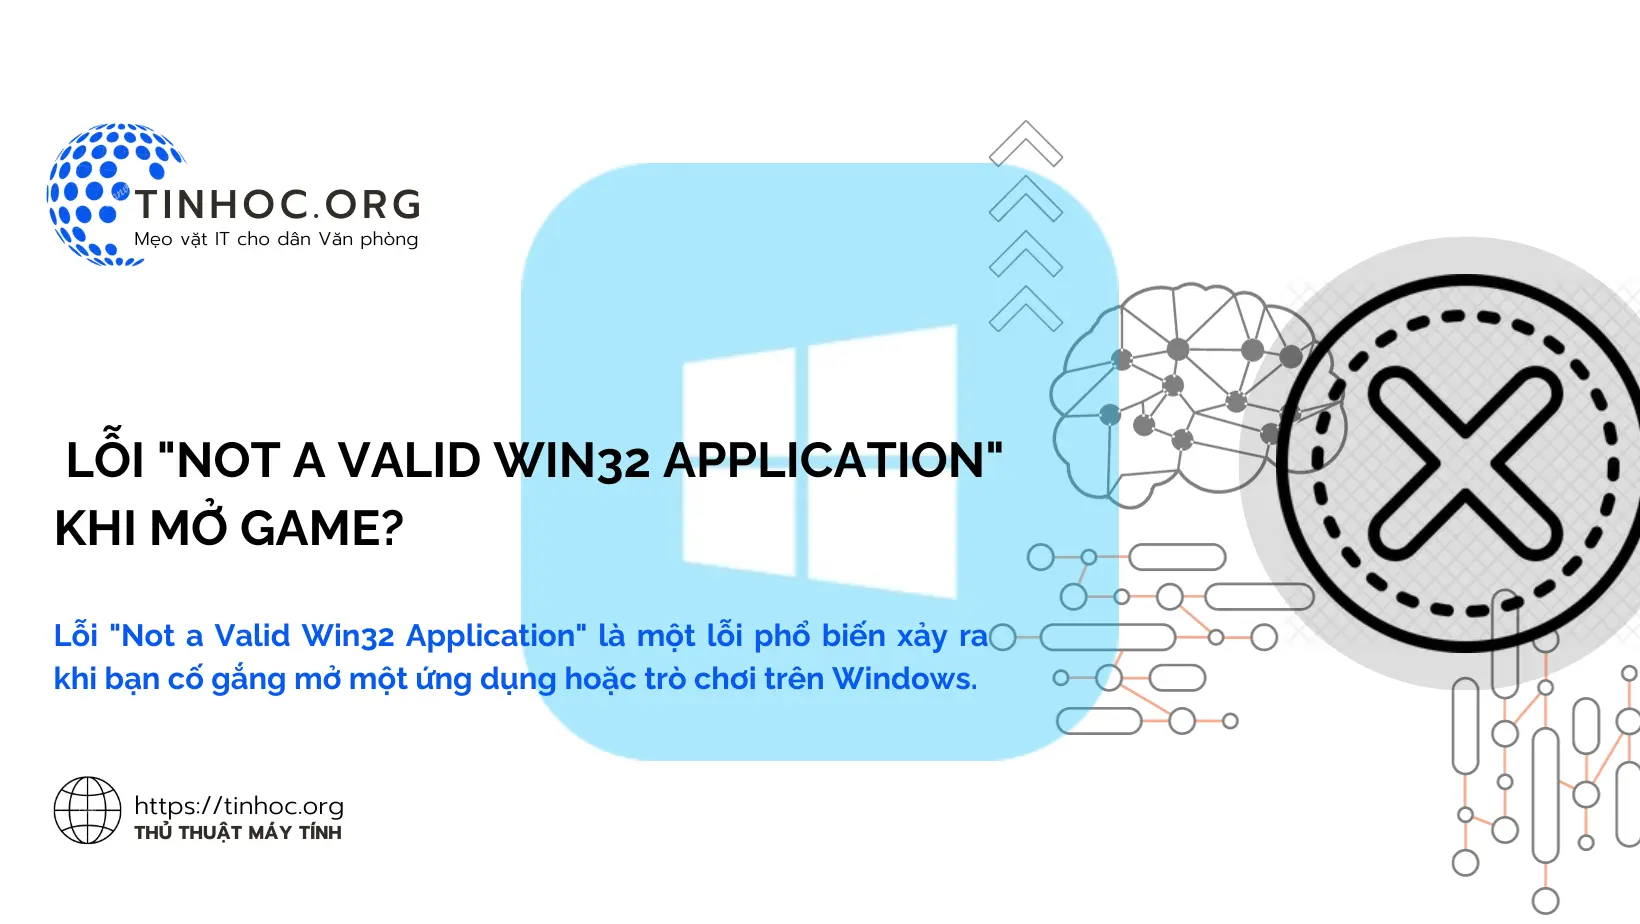 Lỗi "Not a Valid Win32 Application" là một lỗi phổ biến xảy ra khi bạn cố gắng mở một ứng dụng hoặc trò chơi trên Windows.